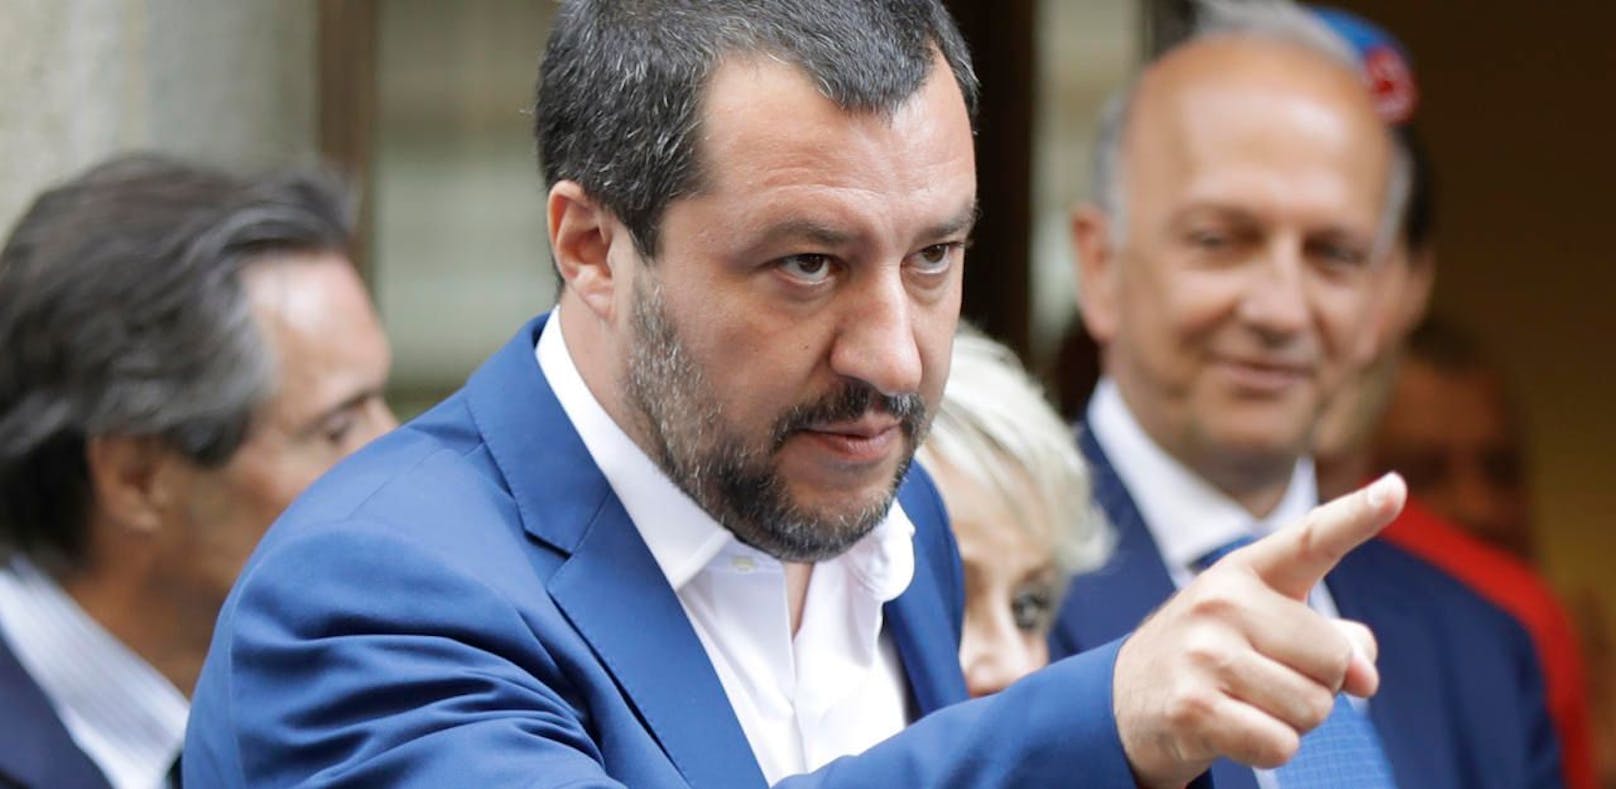 Italiens Innenminister und Chef der Lega Nord, Matteo Salvini